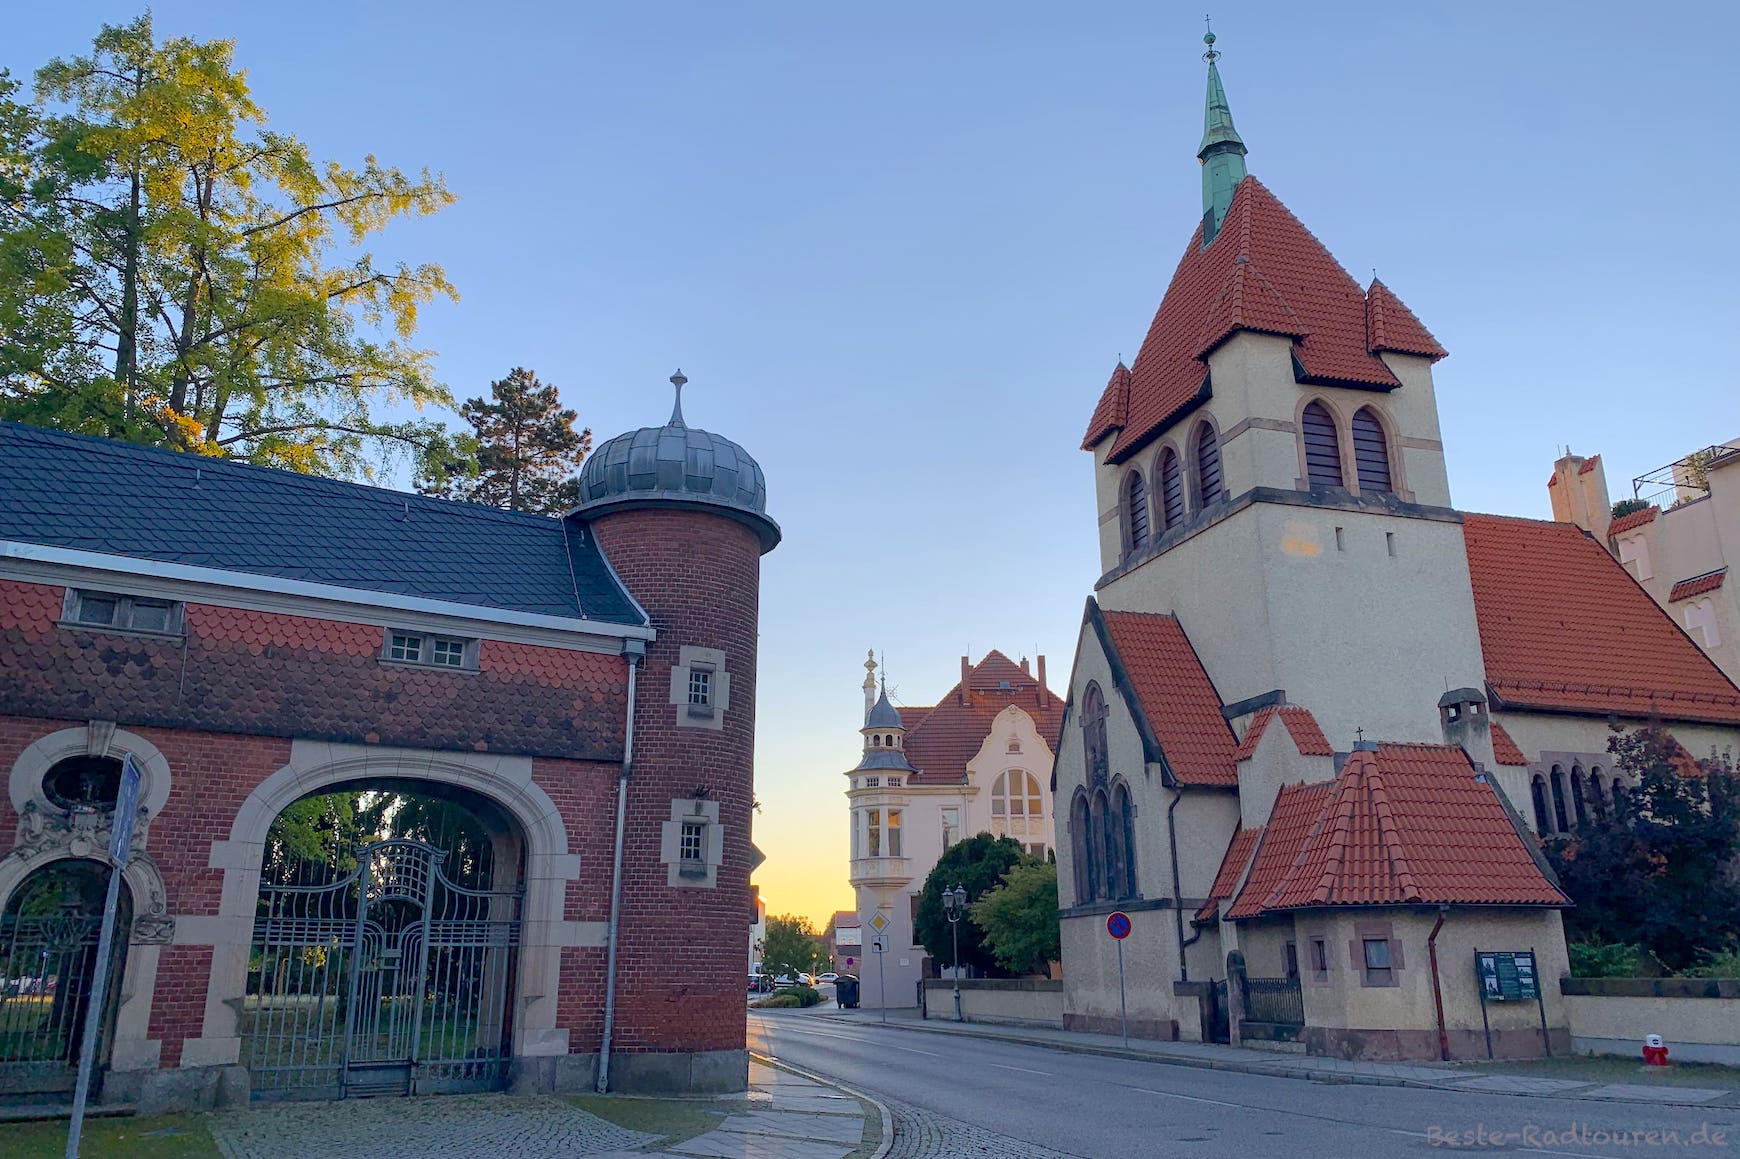 Foto vom Osten her: Historischer Stadtkern Guben, Kirche des Guten Hirten, schönes altes Tor